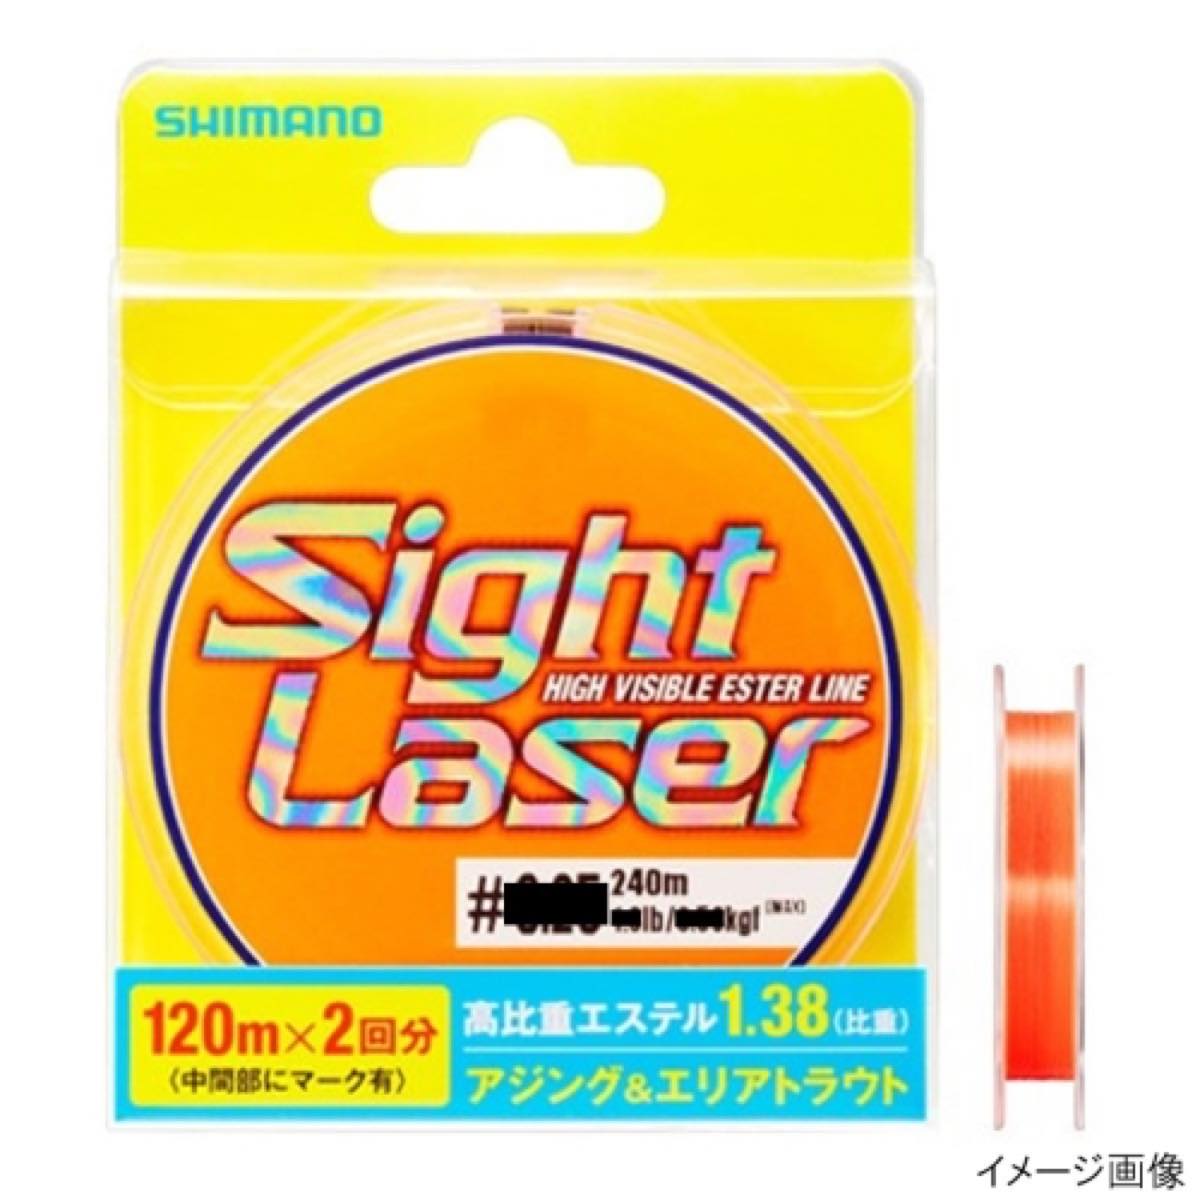 シマノ(SHIMANO) サイトレーザーEX エステル 240m CL-L75Q 0.4号 サイトオレンジ ネコポス(メール便)対象商品